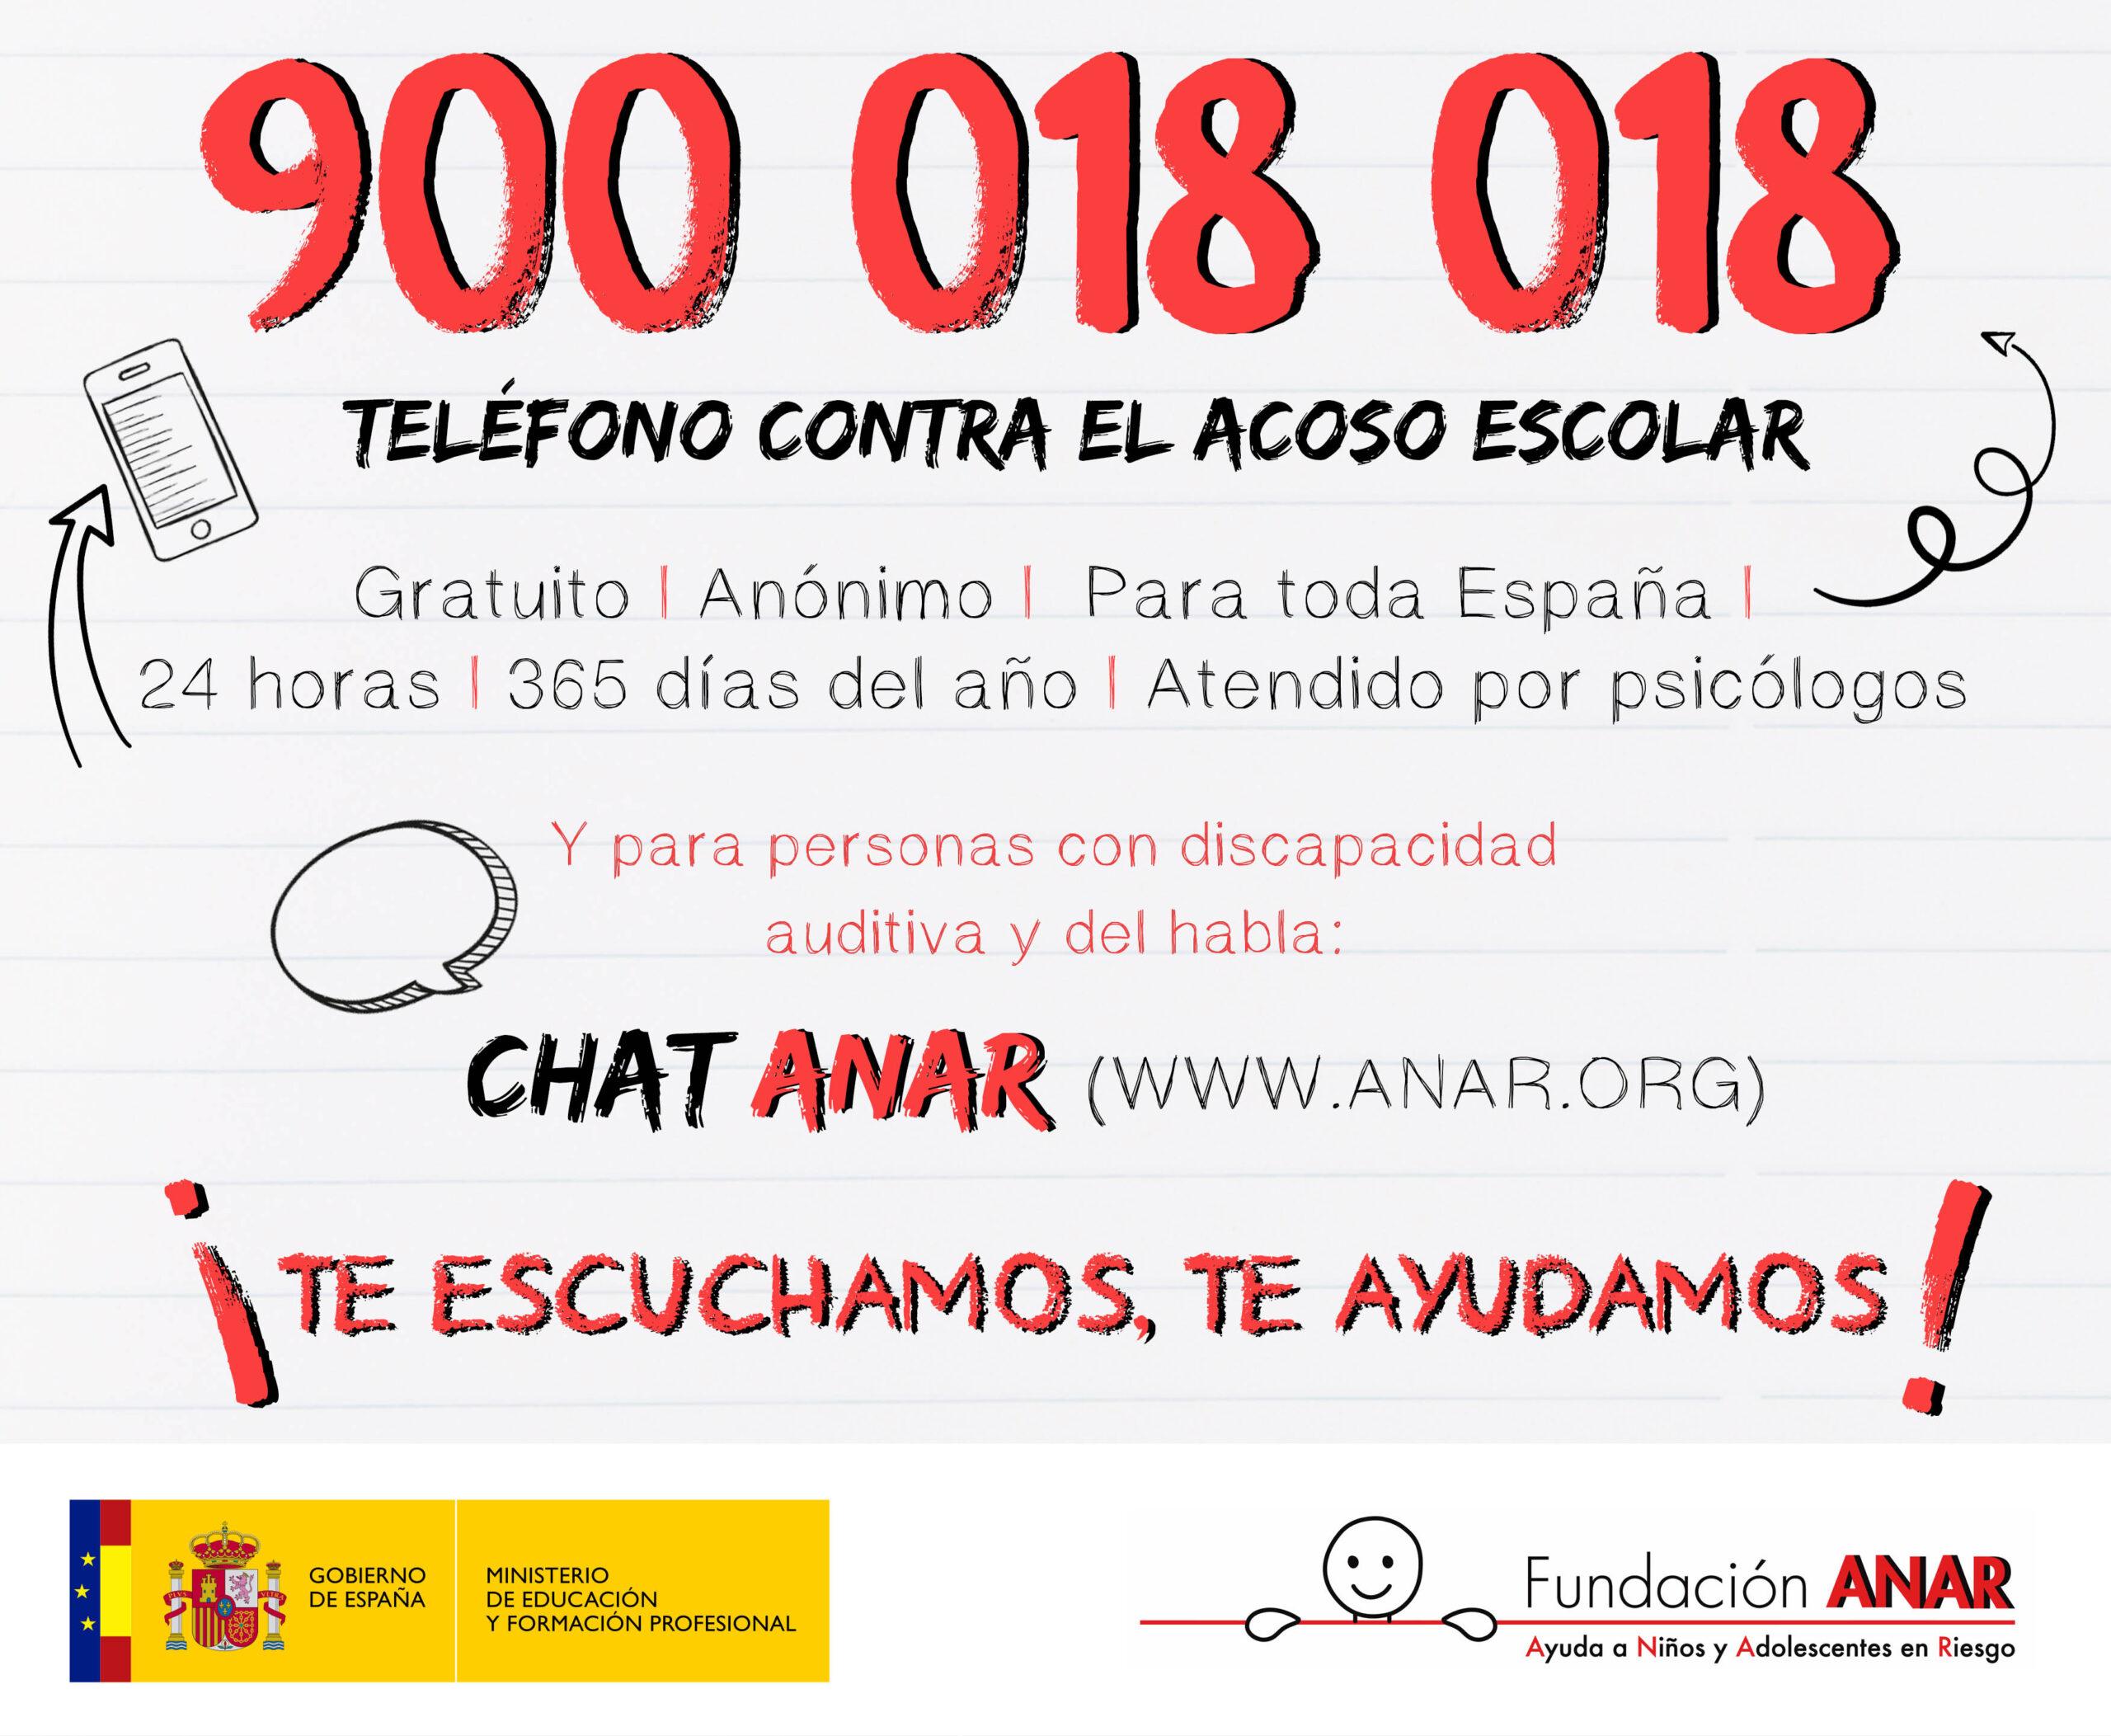 La Fundación ANAR gestionará el Teléfono contra el Acoso Escolar del Ministerio de Educación y FP